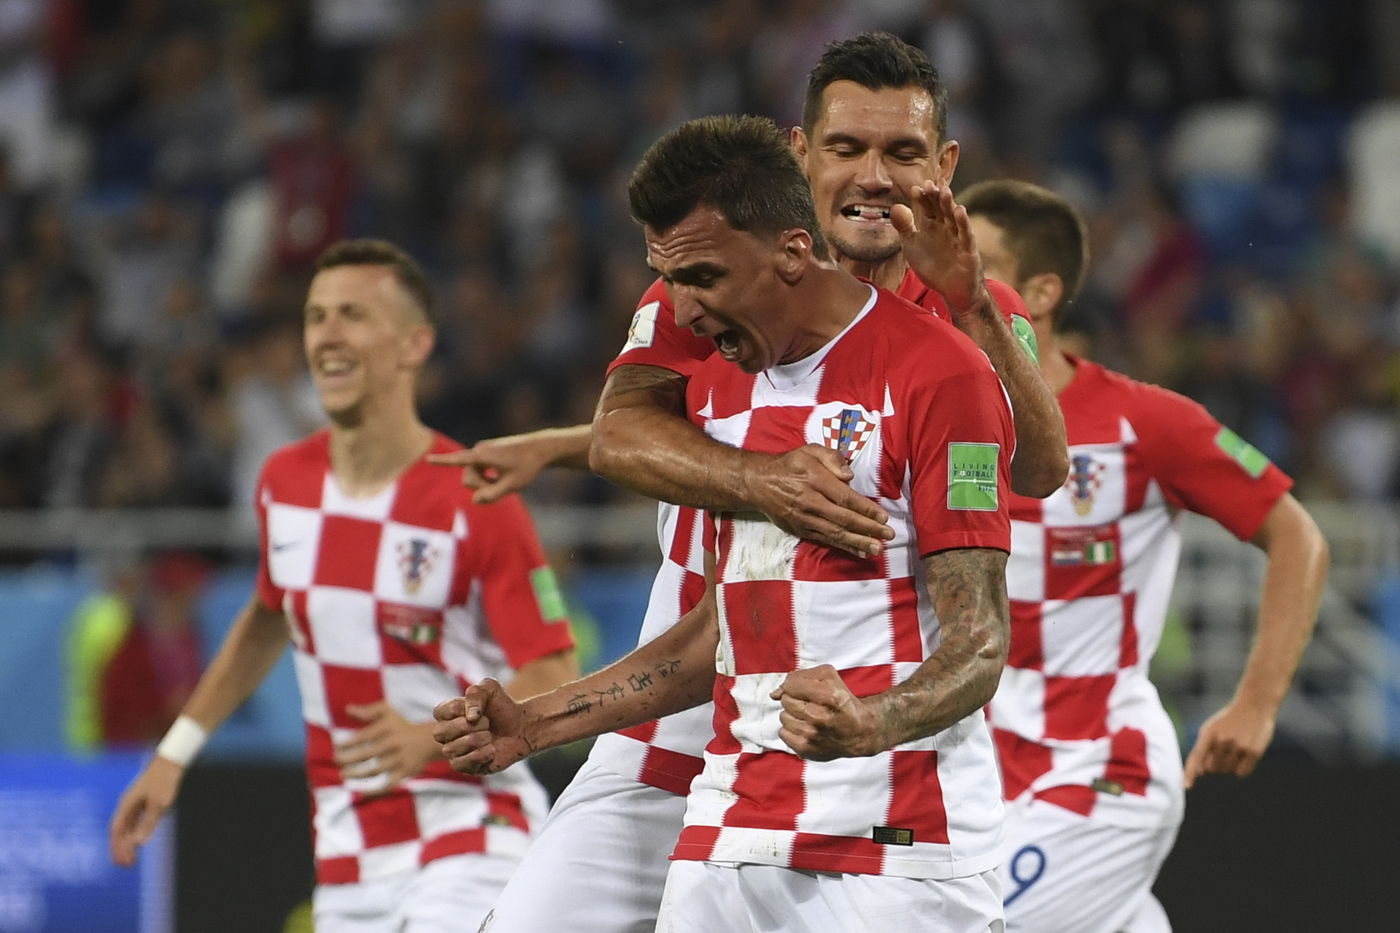 Croazia-Inghilterra mercoledì 11 luglio, analisi e pronostico semifinale Mondiali Russia 2018